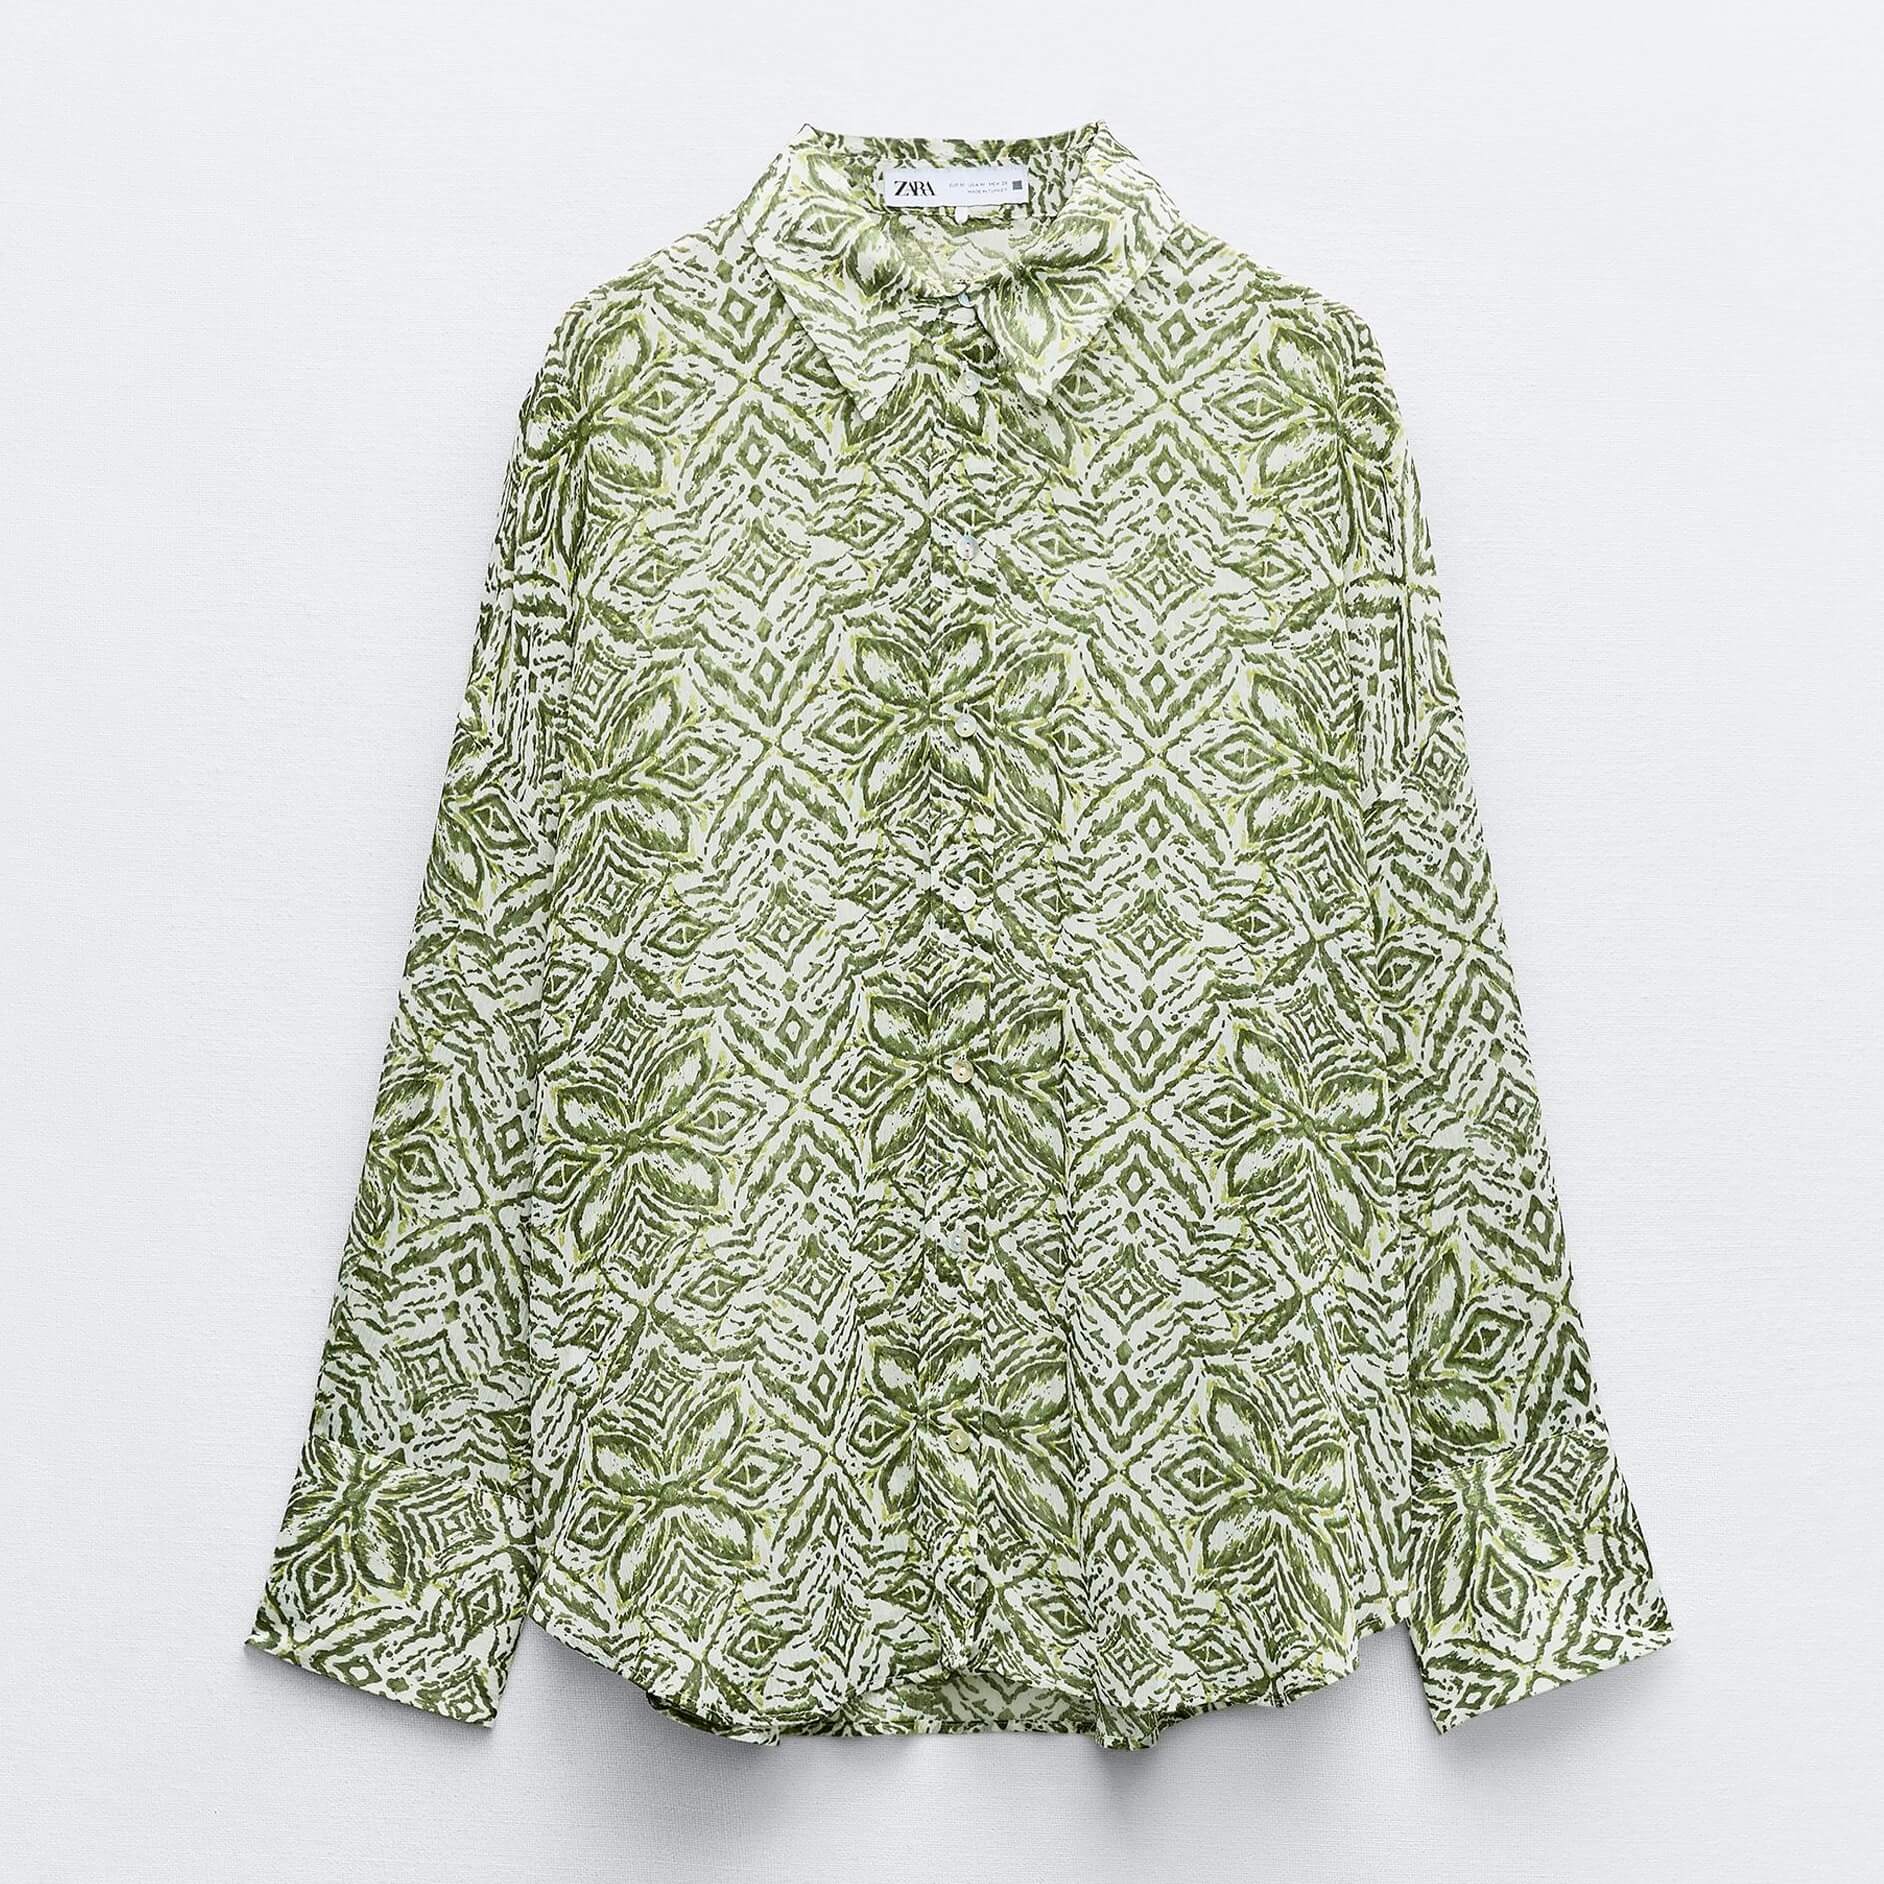 Рубашка Zara Printed, зеленый/белый рубашка zara printed satin синий белый